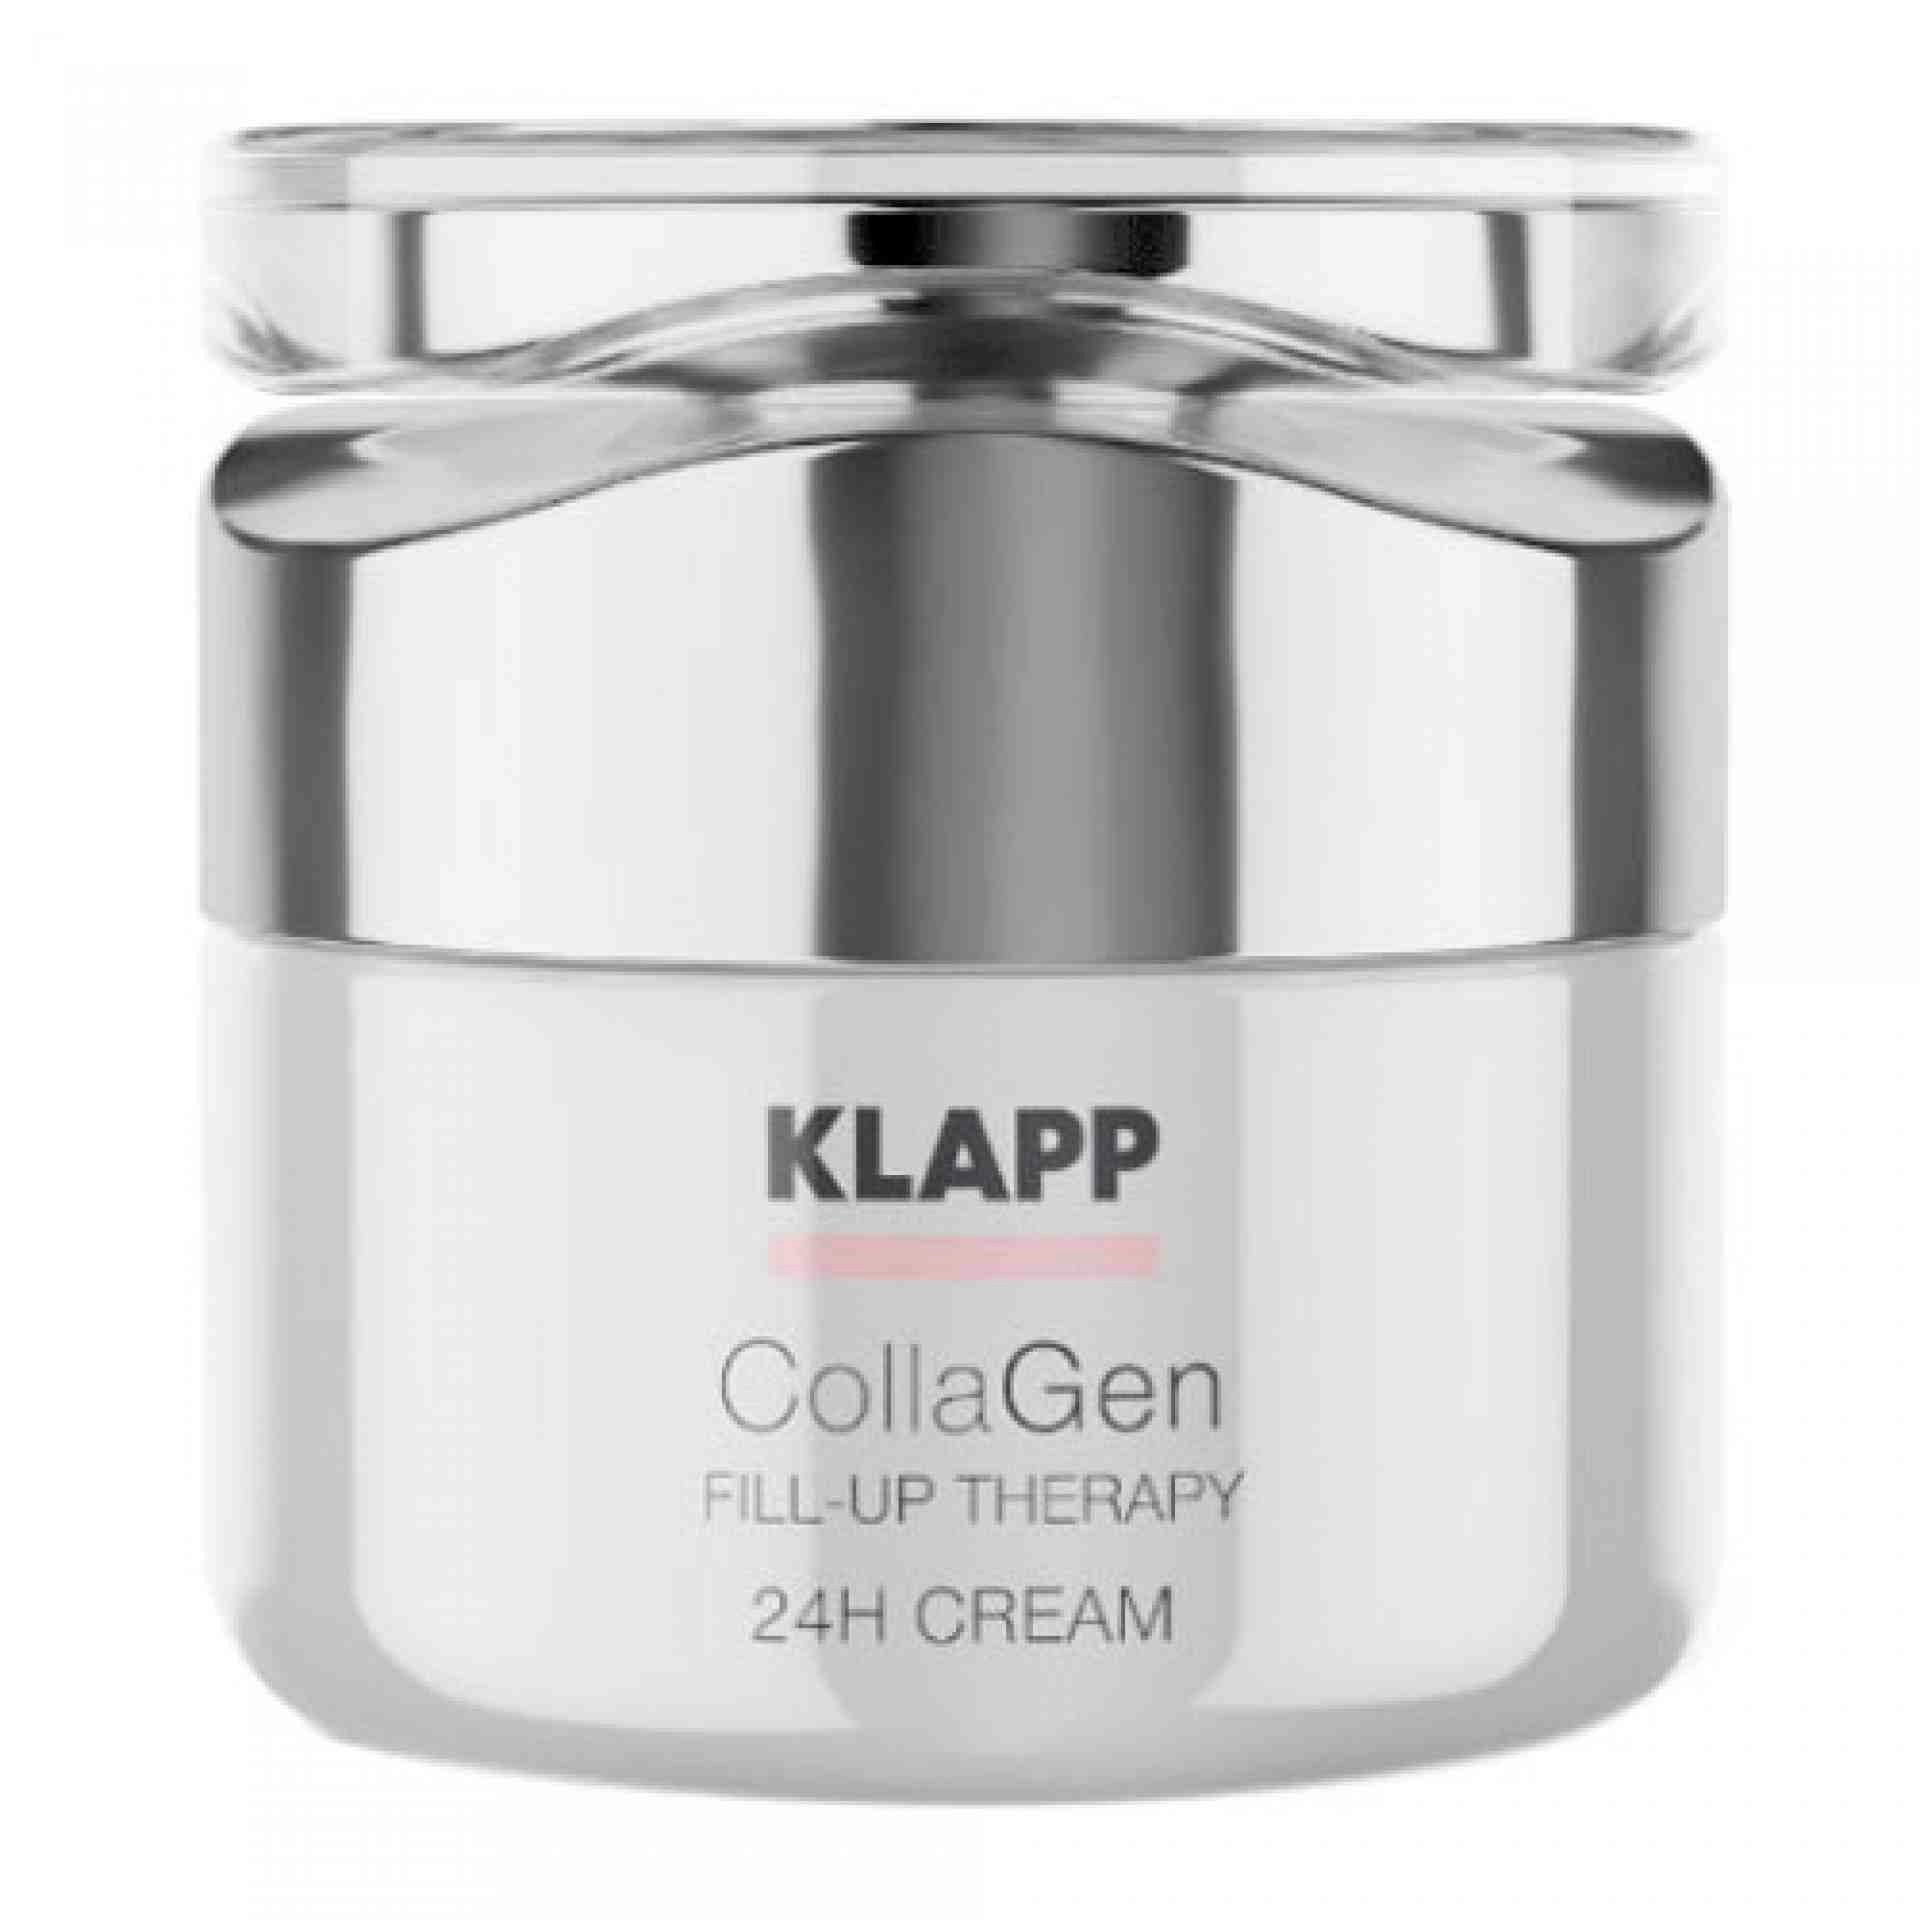 24H Cream | Crema Reafirmante 24H 50ml - Collagen Fill-Up Therapy - Klapp ®